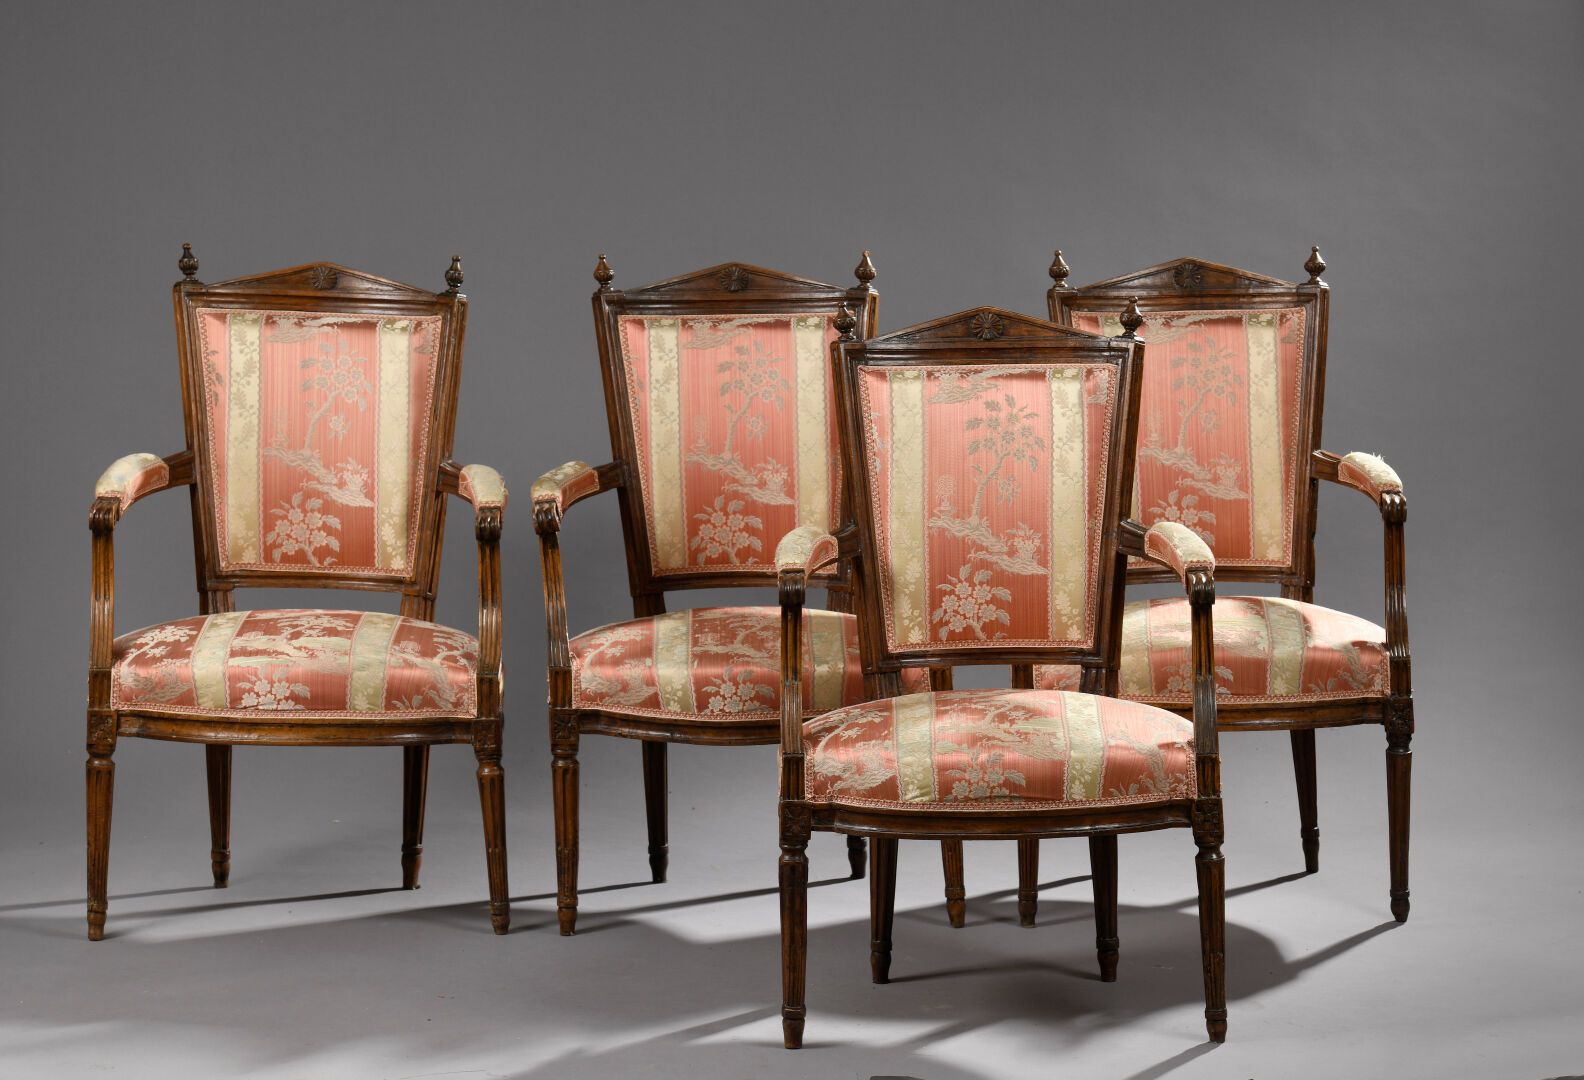 Null 一套六把路易十六时期的模制雕刻木扶手椅。
梯形椅背饰有玫瑰花窗，椅腿为锥形、凹槽和锉刀形。
损坏和修复。
H.88 宽 55 深 47 厘米